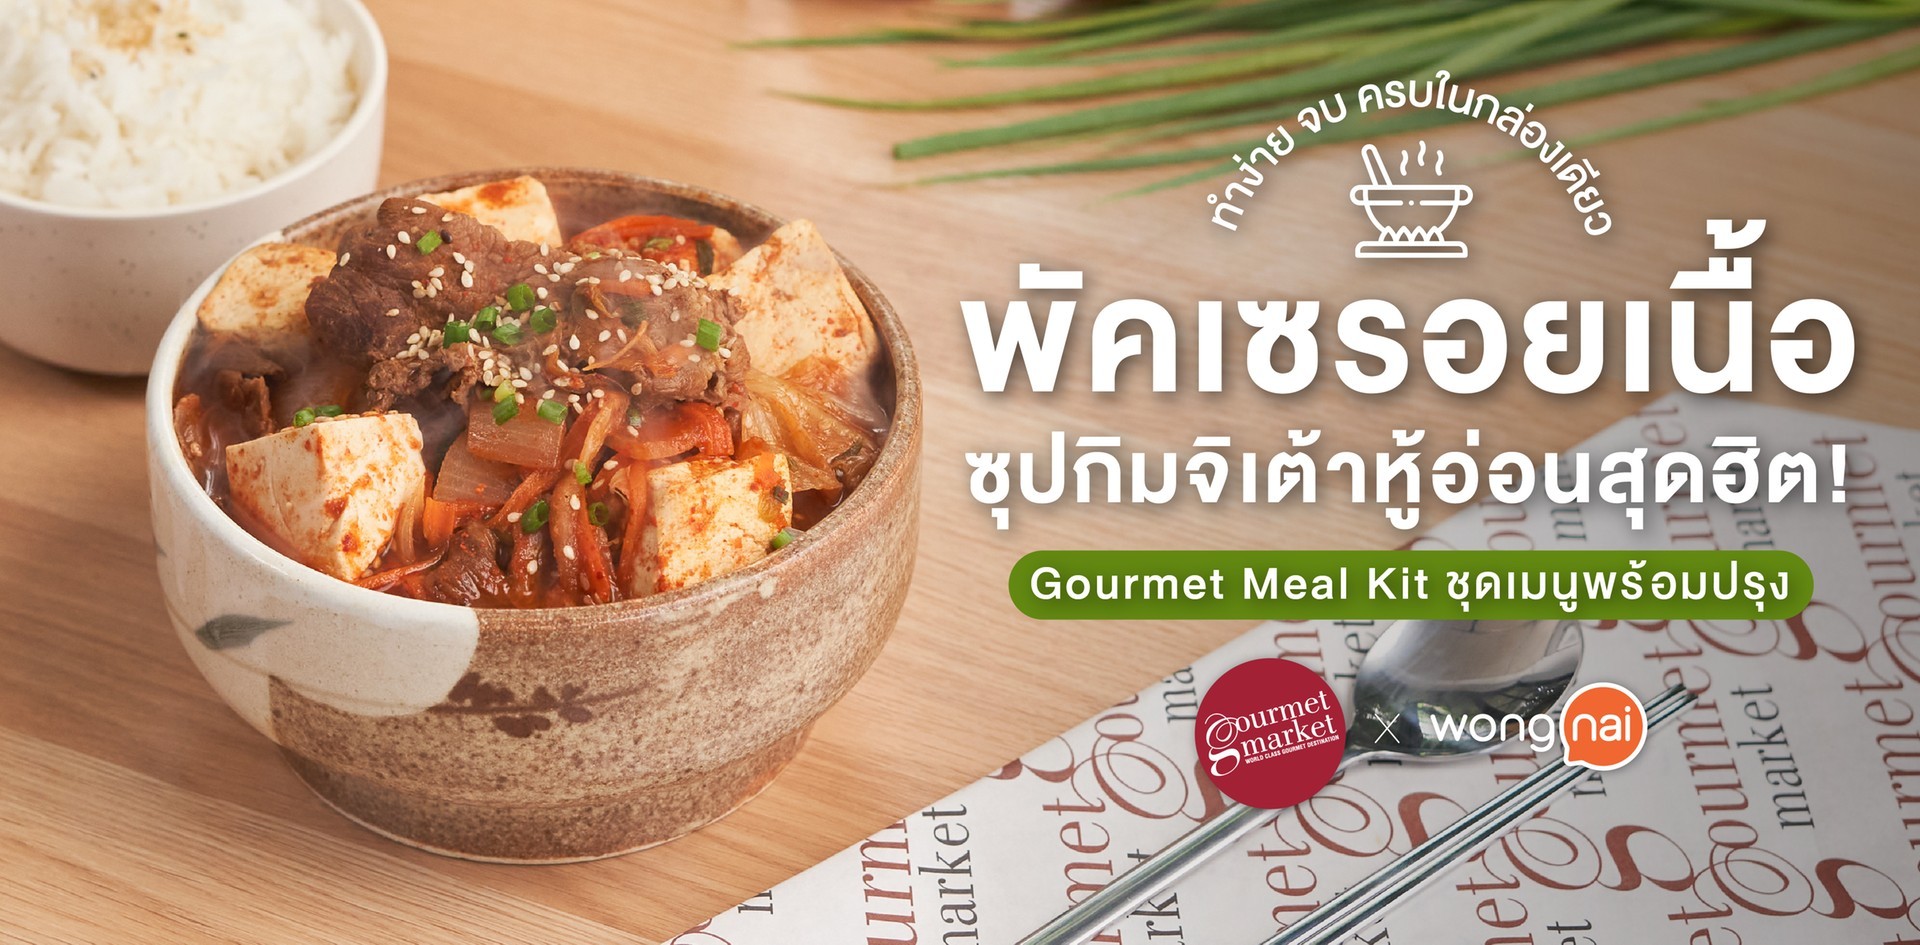 Gourmet Meal Kit ชุด “พัคเซรอยเนื้อ” ซุปกิมจิเต้าหู้อ่อนสุดฮิต!